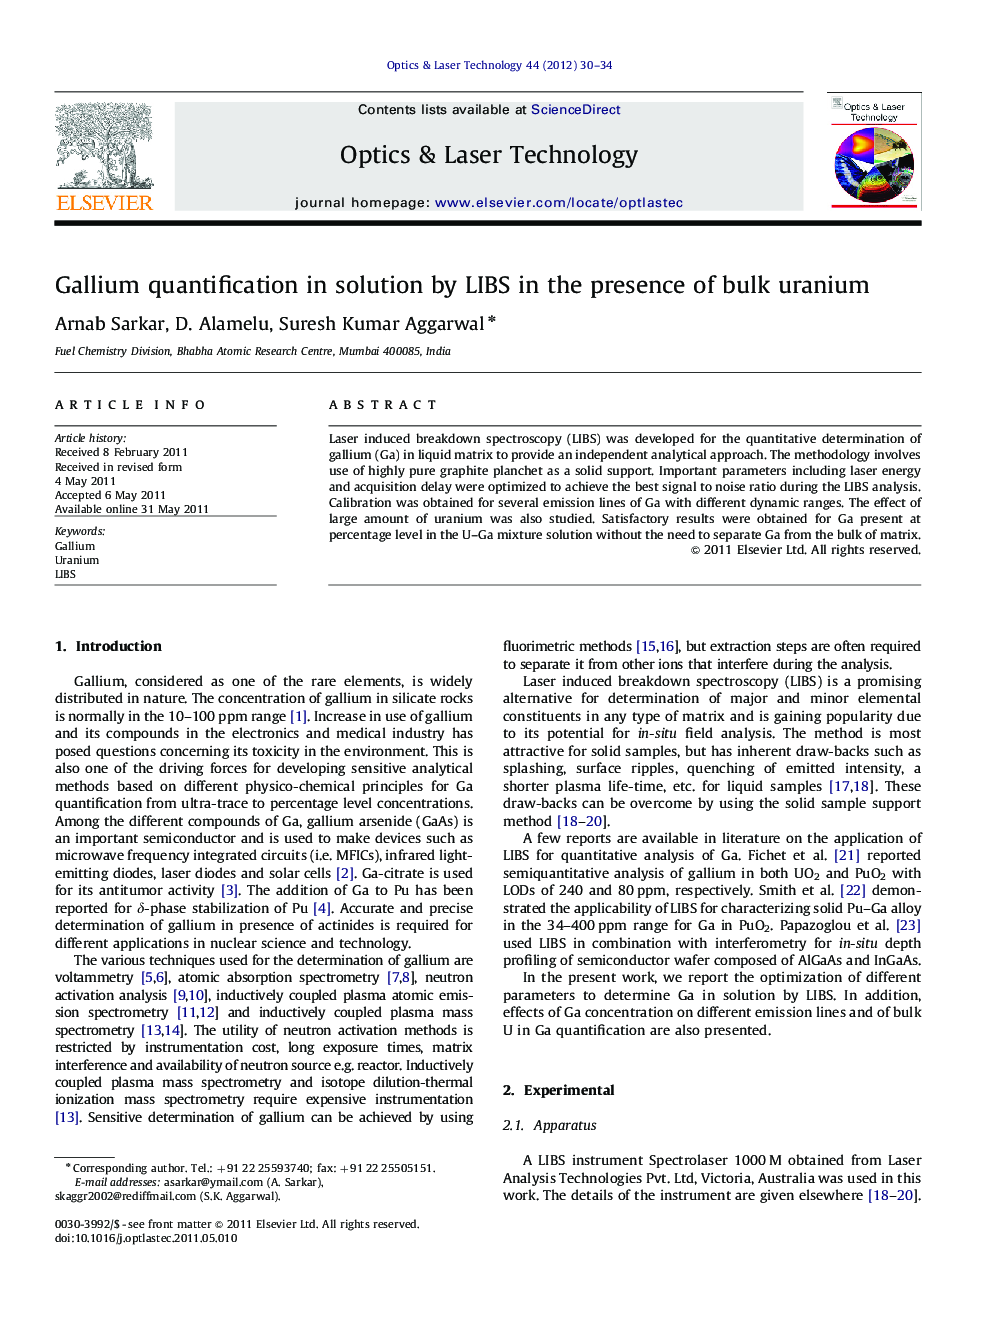 Gallium quantification in solution by LIBS in the presence of bulk uranium